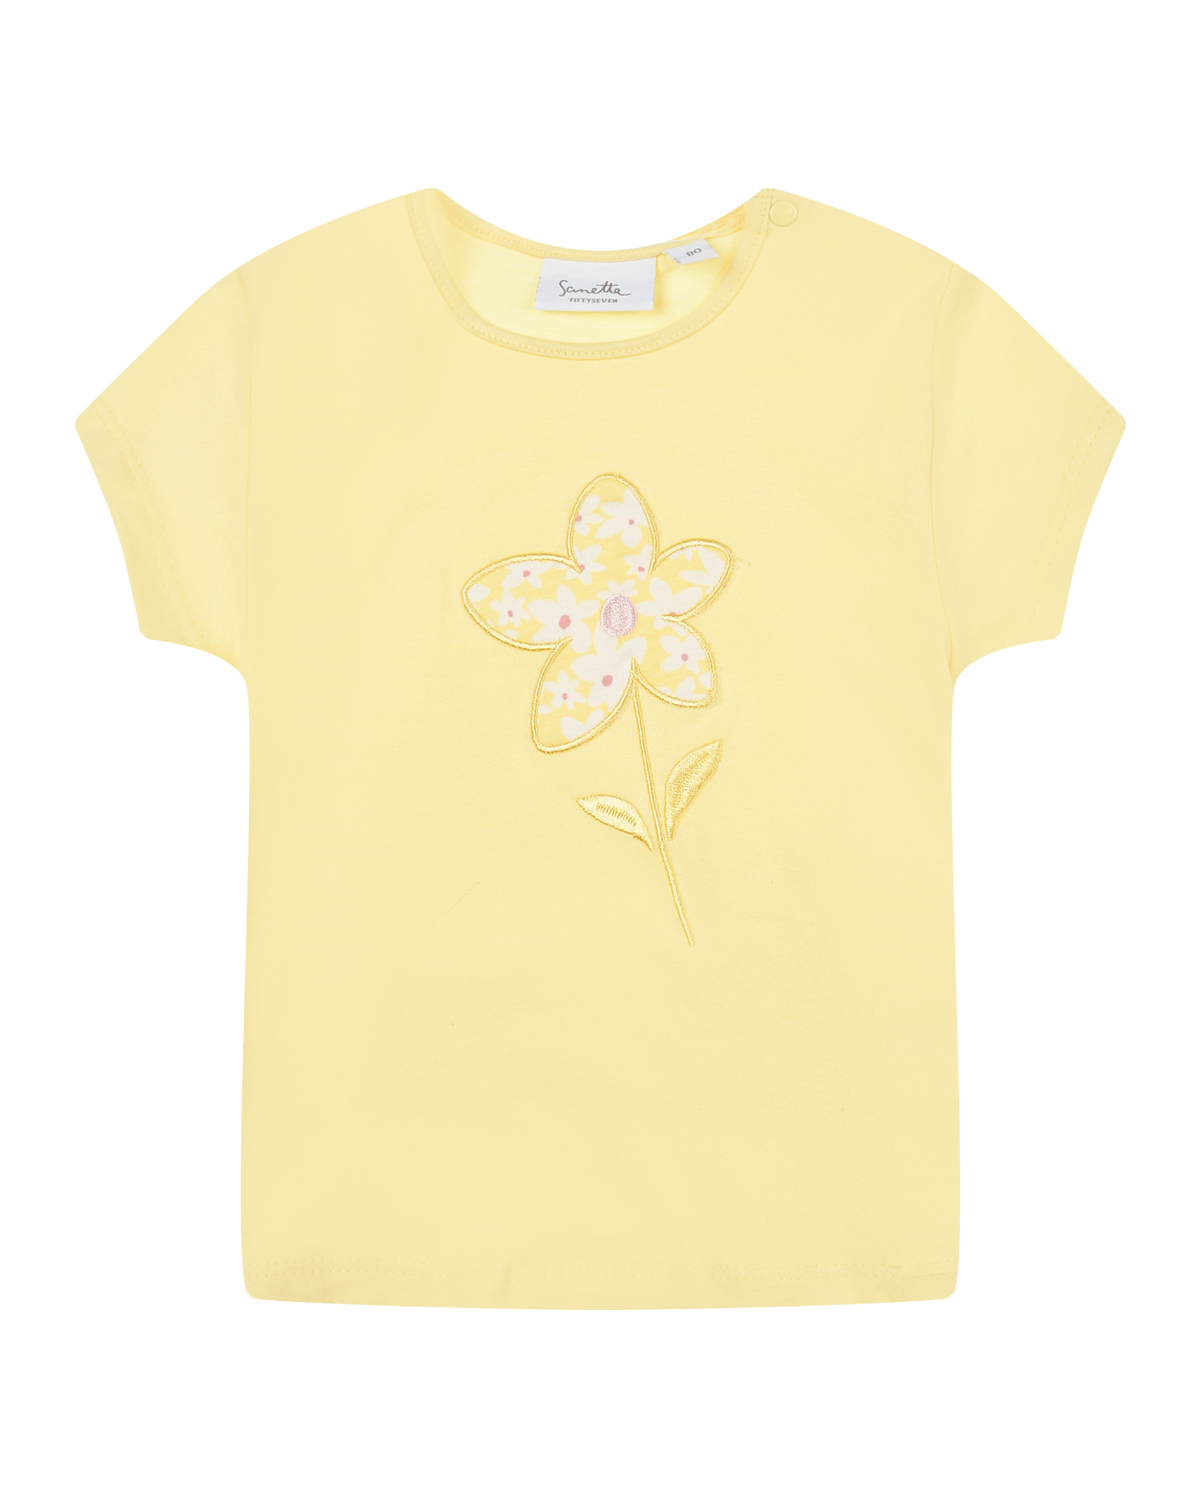 Желтая футболка с вышивкой Sanetta fiftyseven bayer малышка в костюмчике с вышивкой в виде ослика 38 см